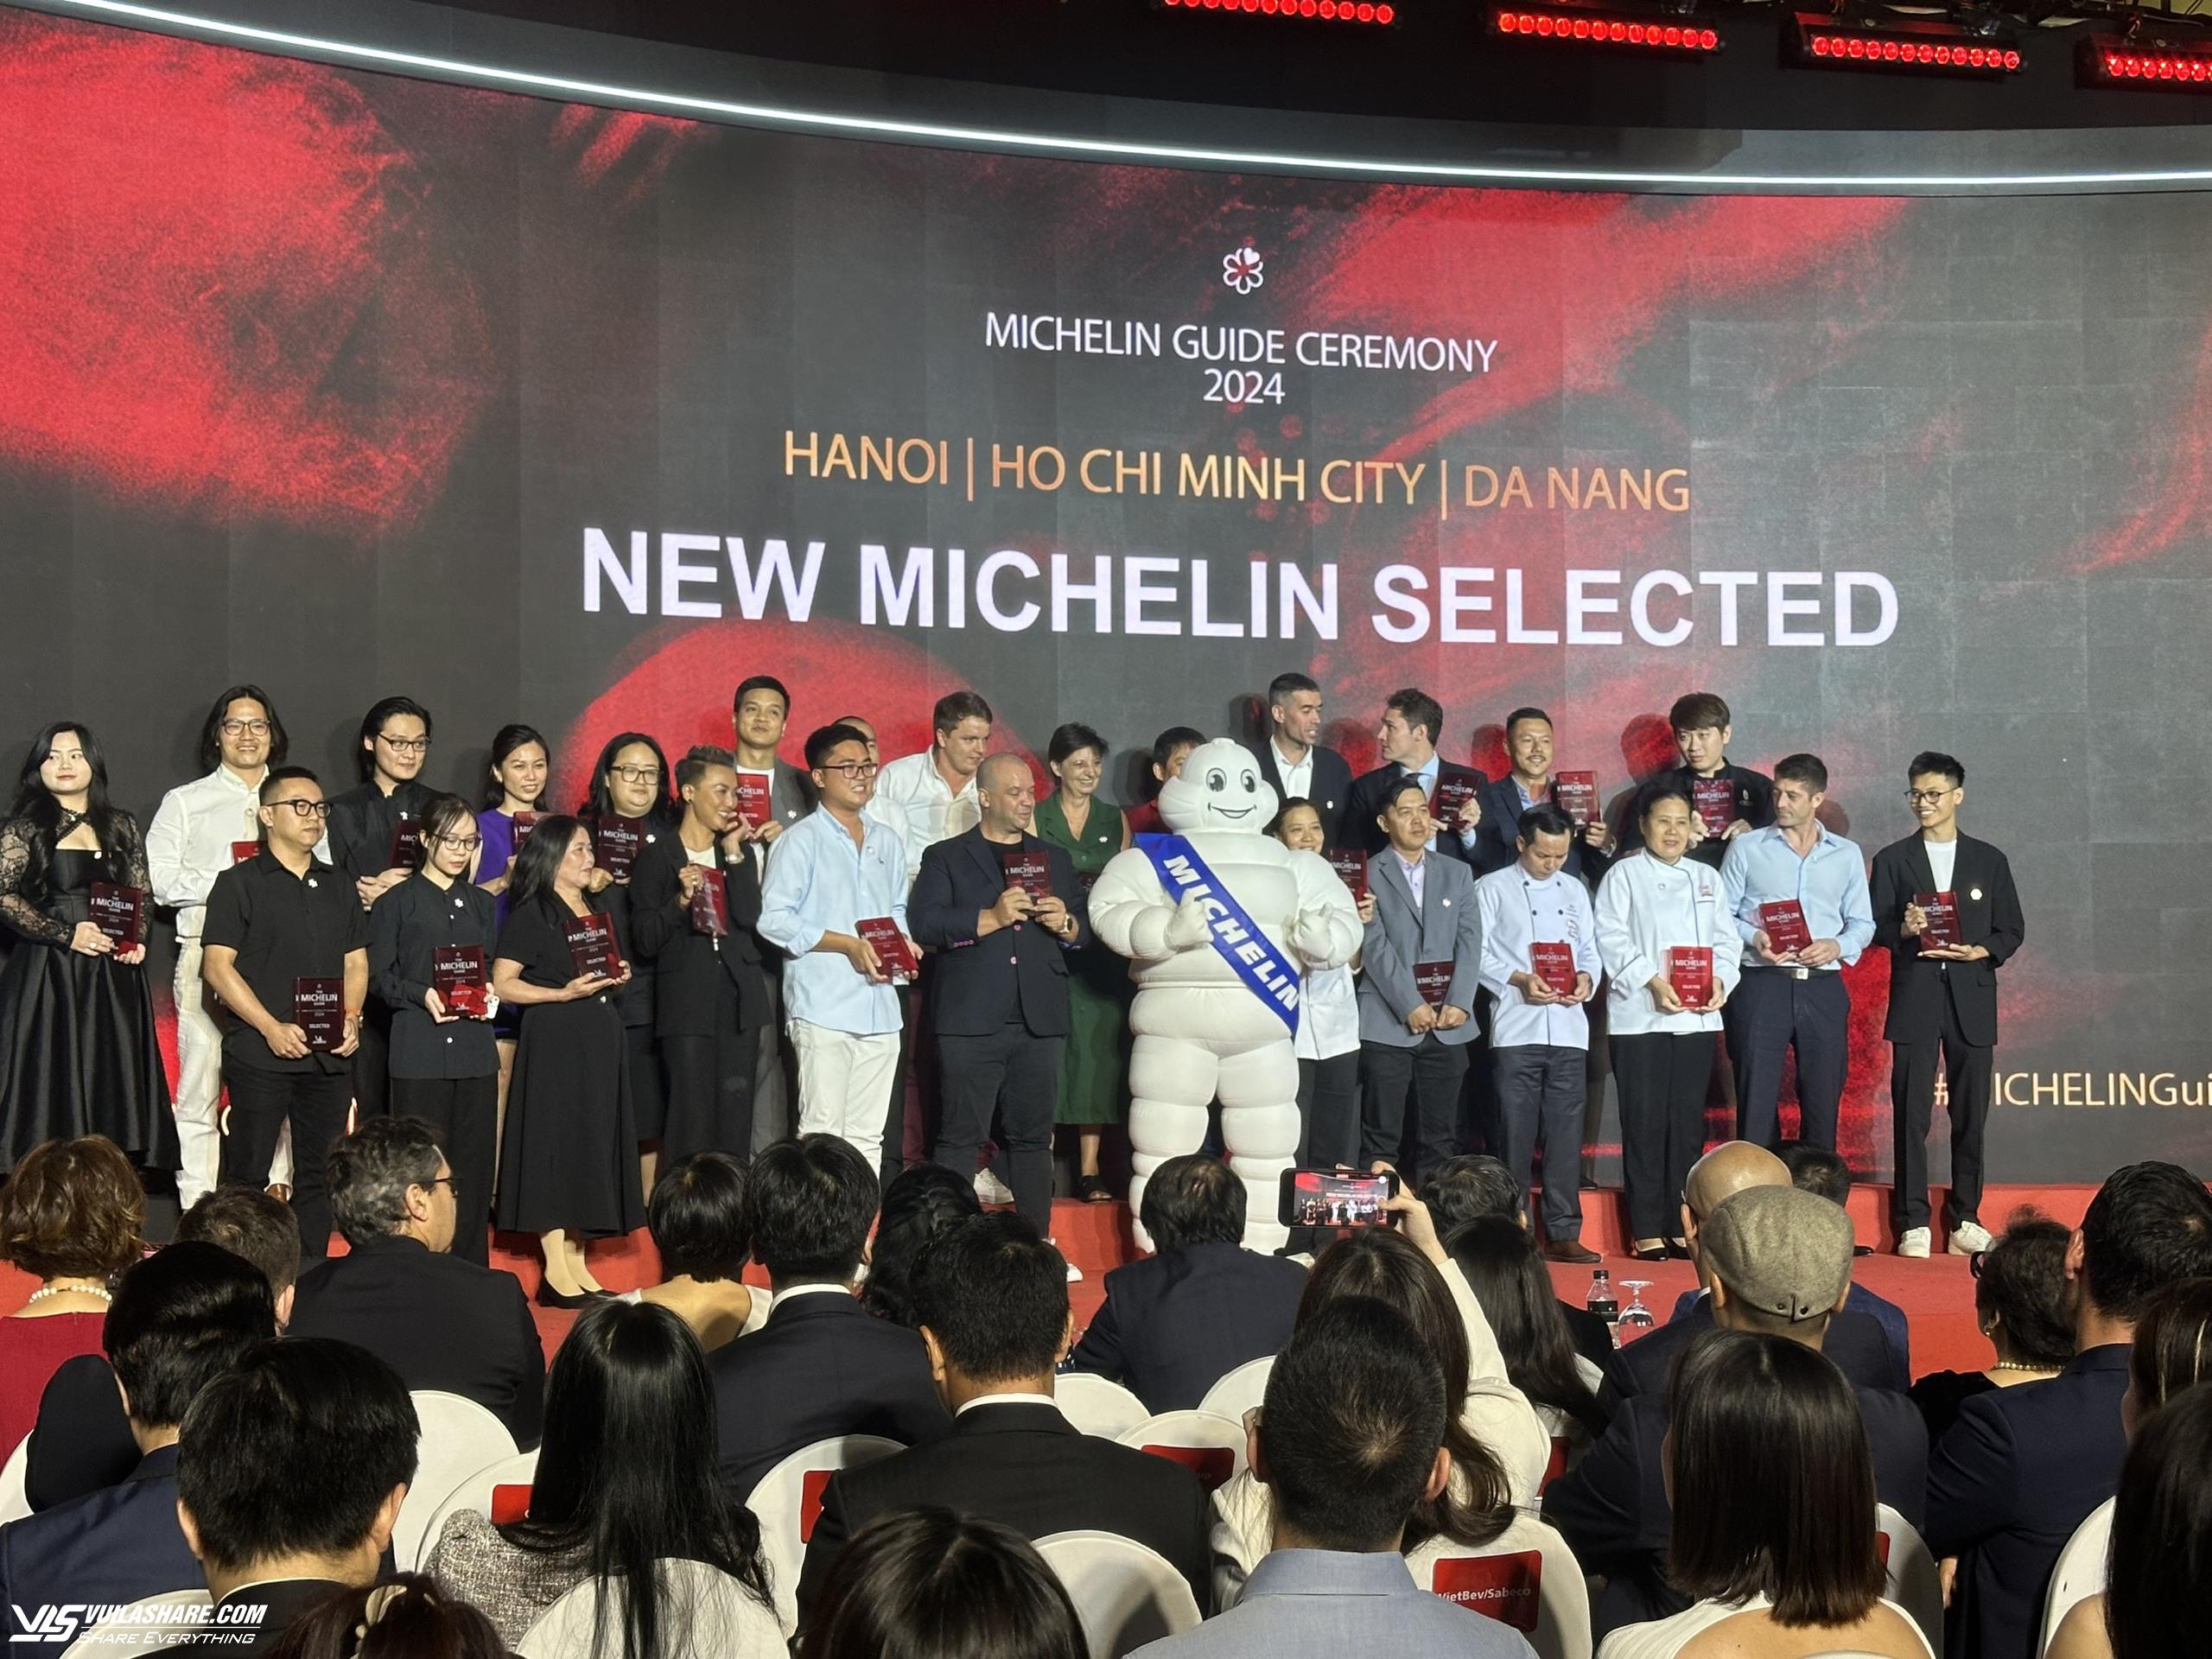 7 nhà hàng được gắn sao Michelin tại Việt Nam: Lần đầu tiên có sao xanh- Ảnh 6.